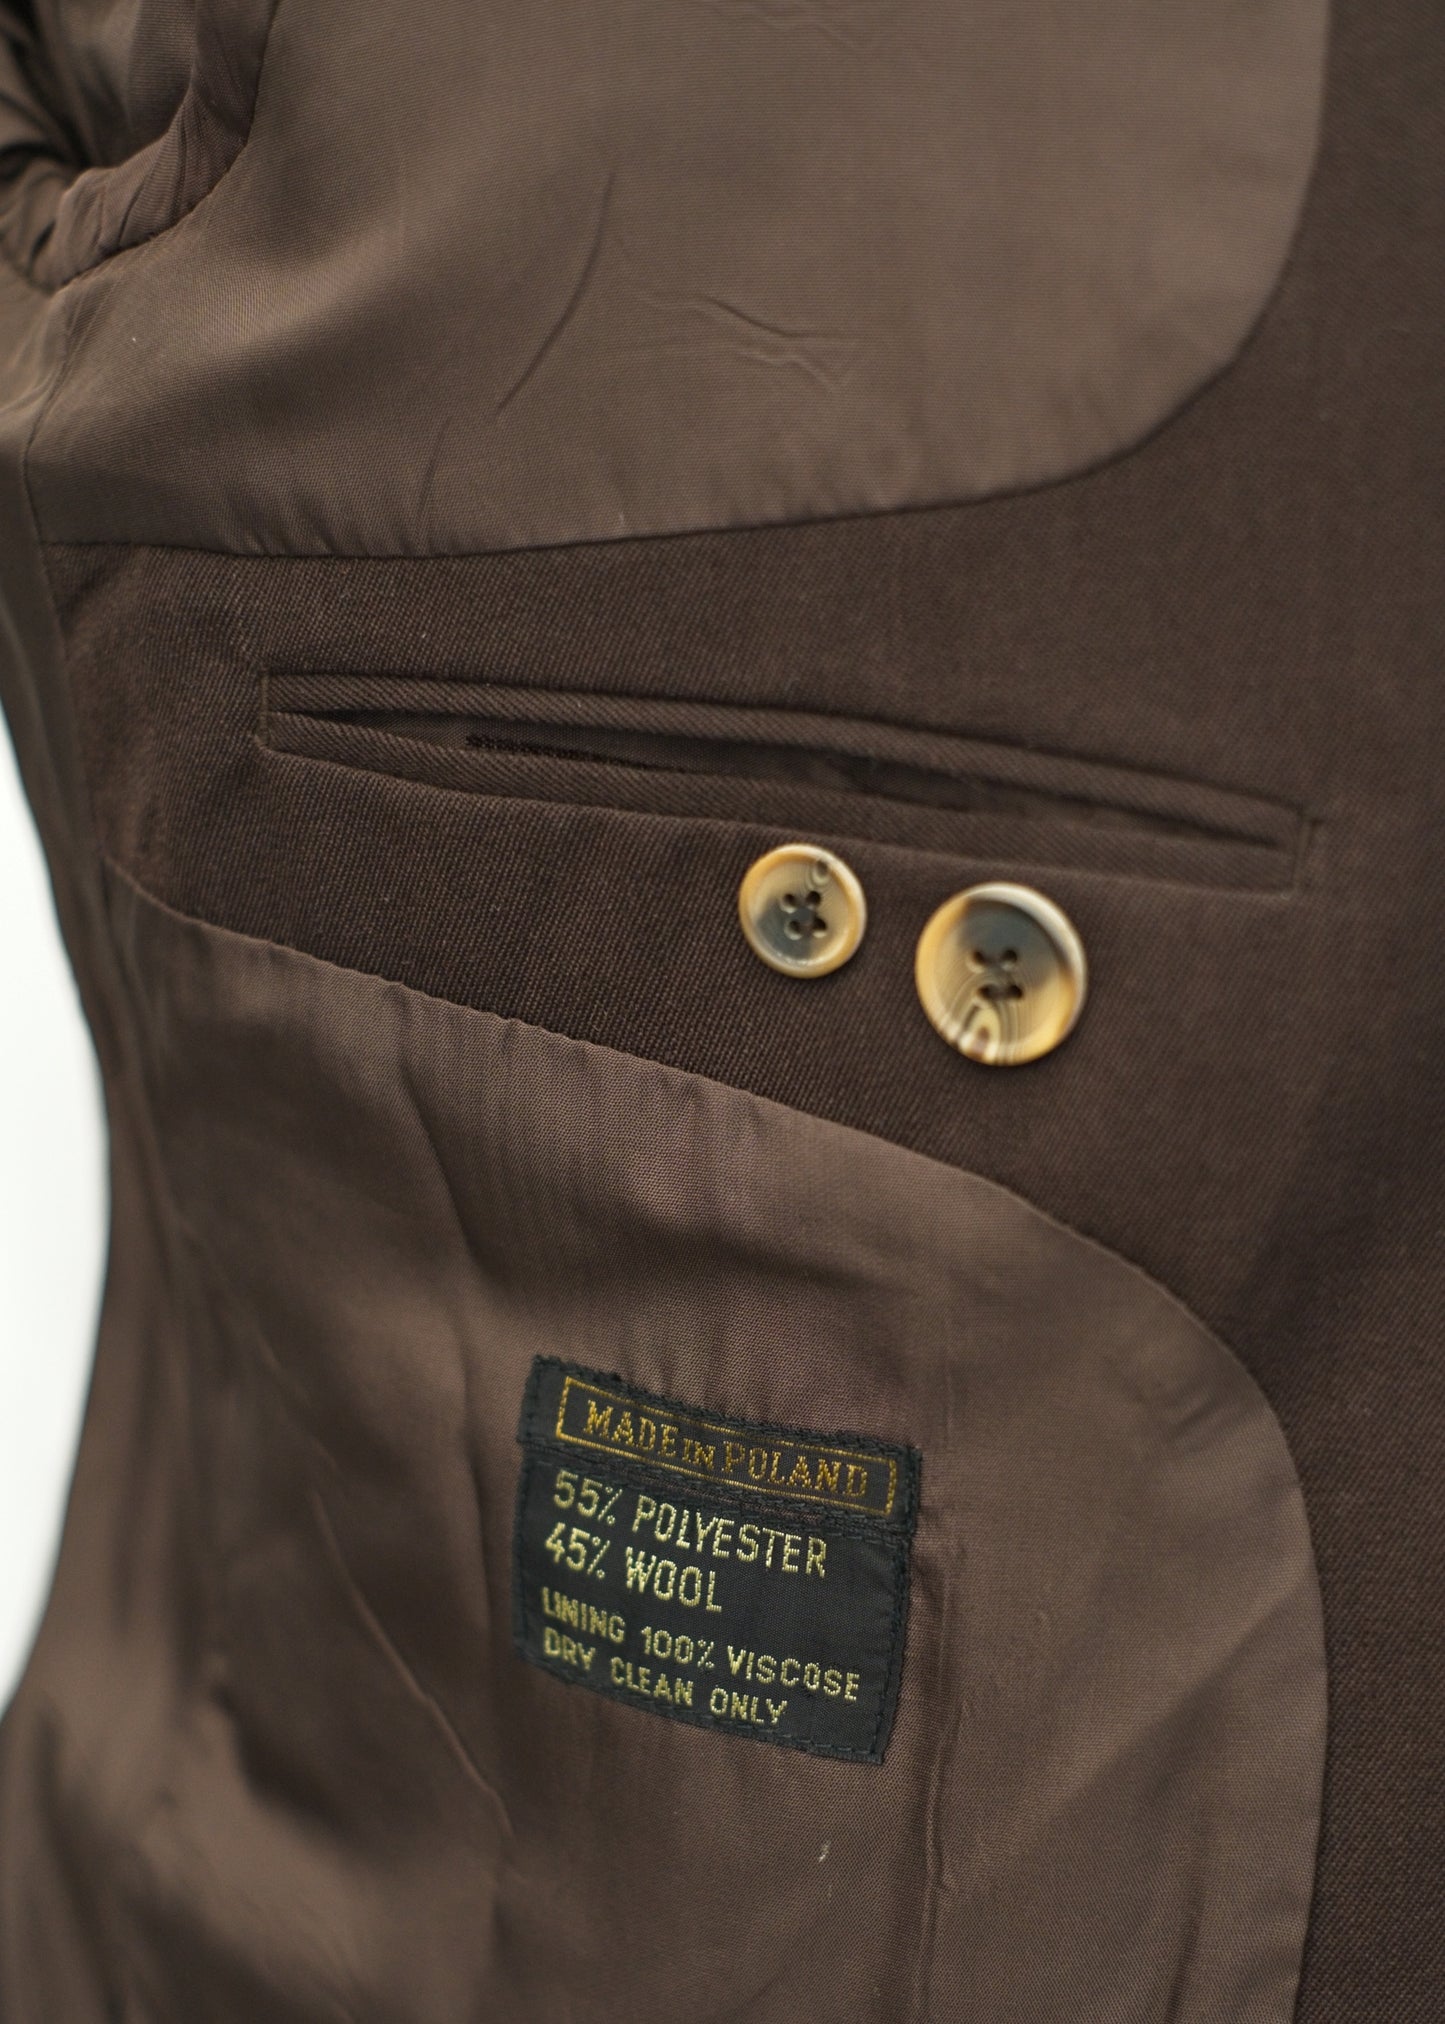 Men's Hepworth's Brown 2 Piece Jacket Waistcoat Suit • 42R